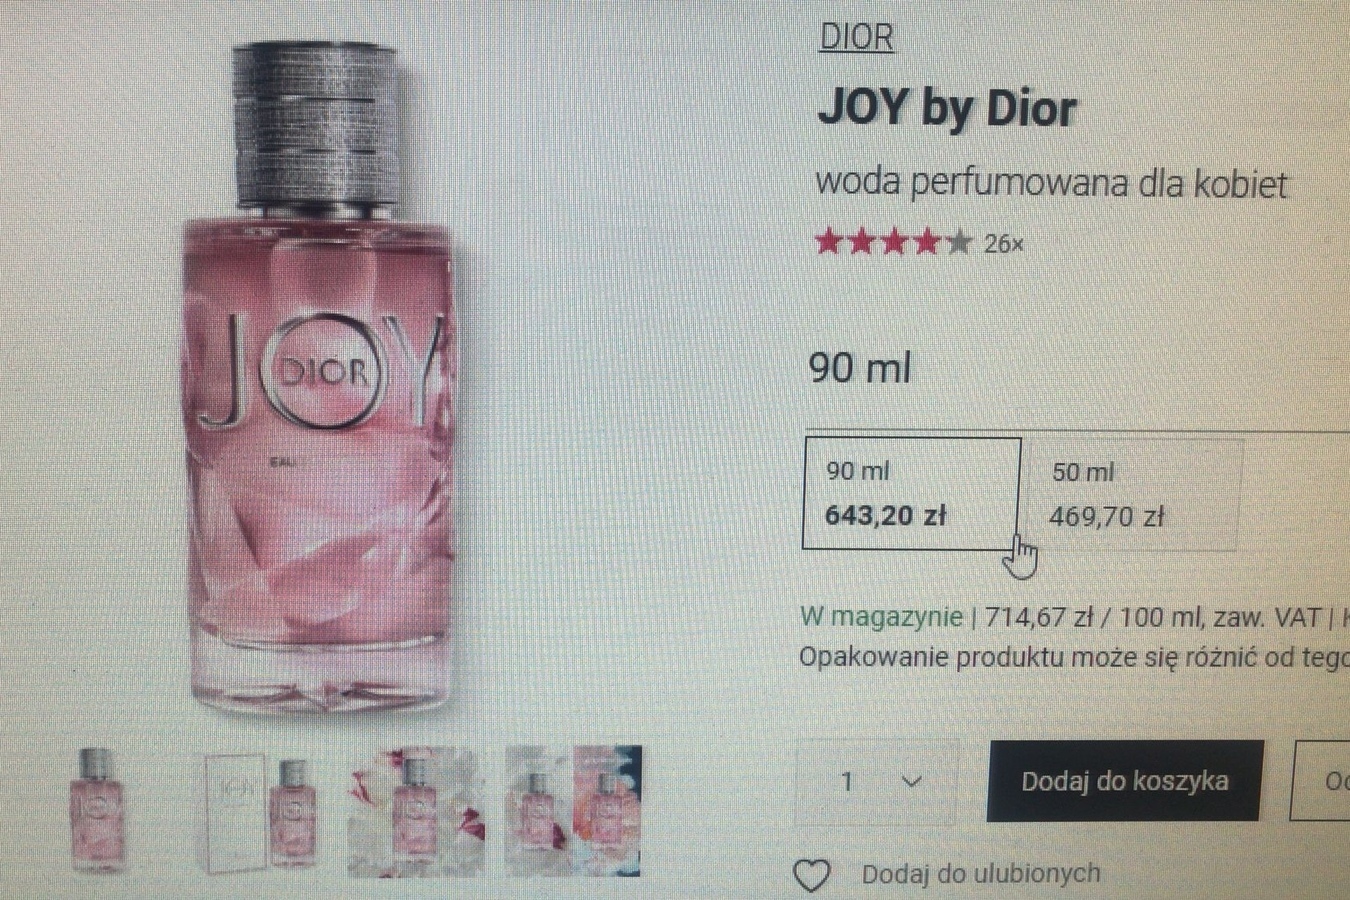 Takie perfumki na prezent dla kobiety z.. "wyższej półki" 🤷‍♂️🙂🤣